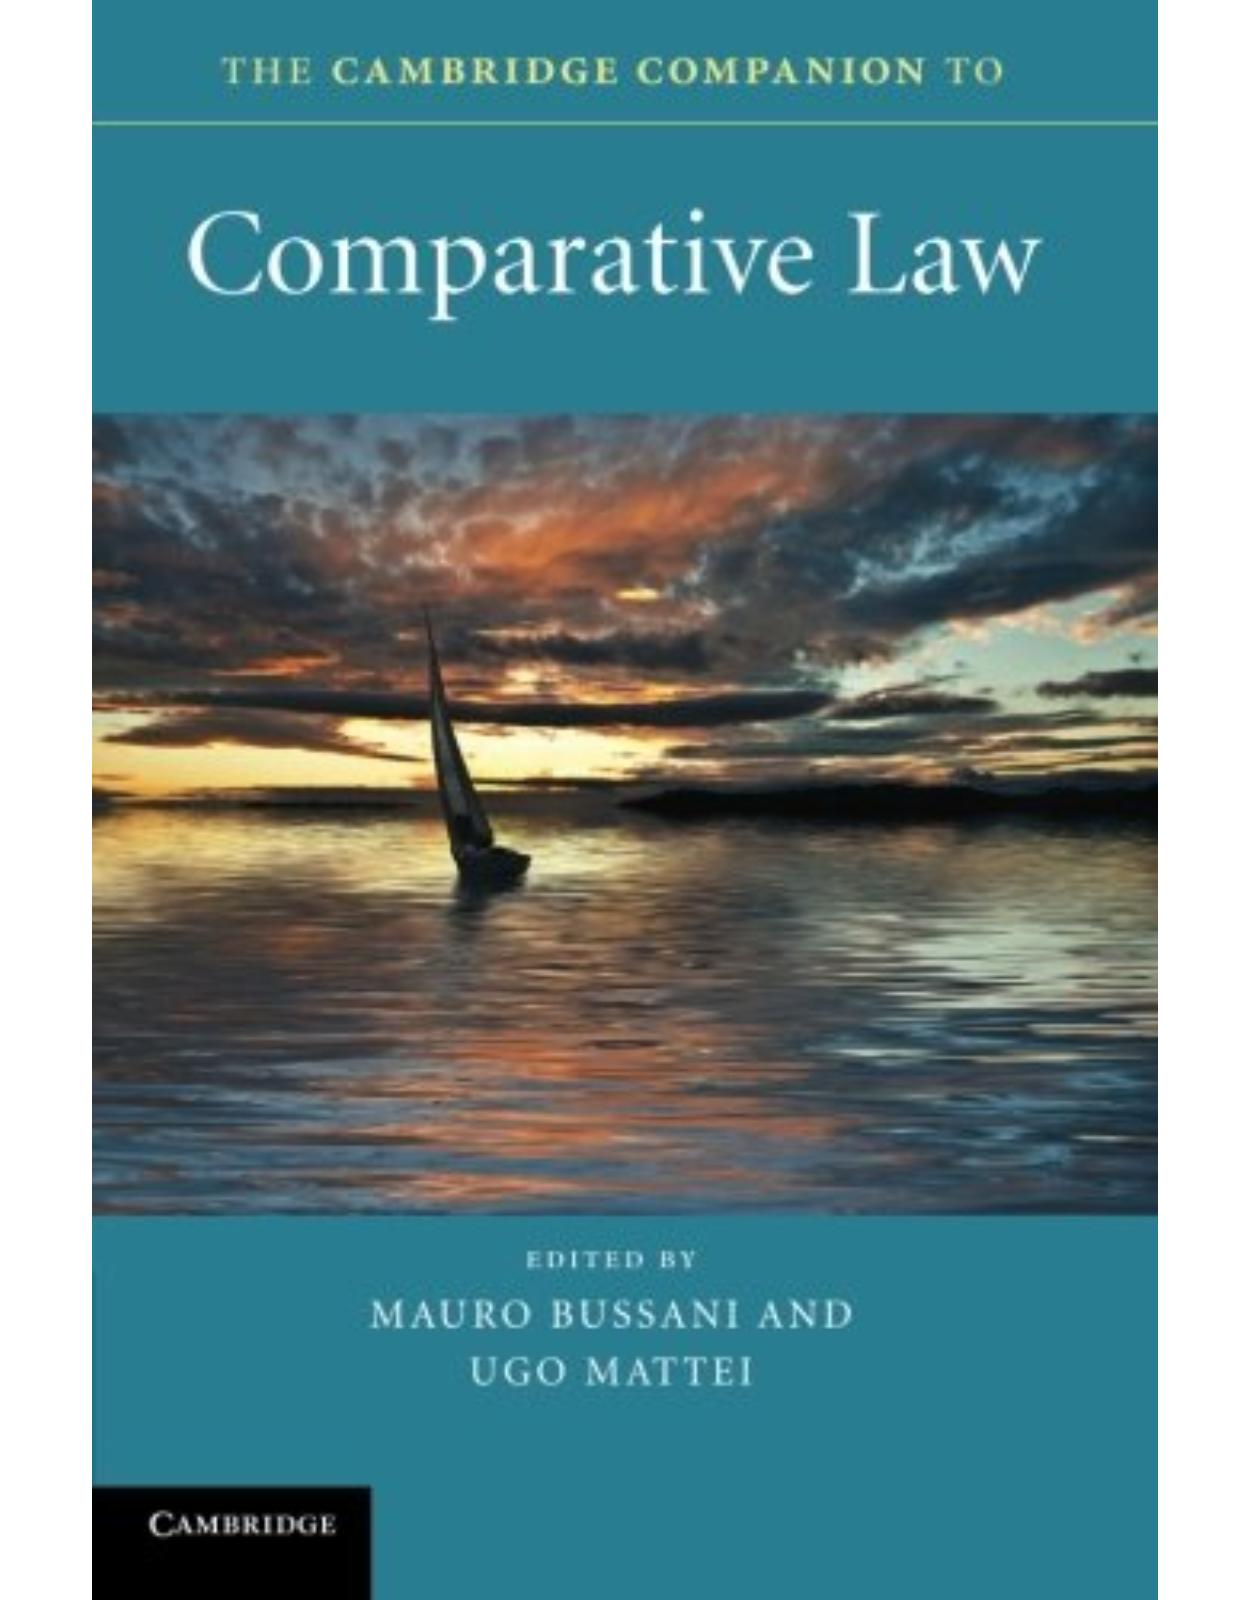 The Cambridge Companion to Comparative Law (Cambridge Companions to Law)